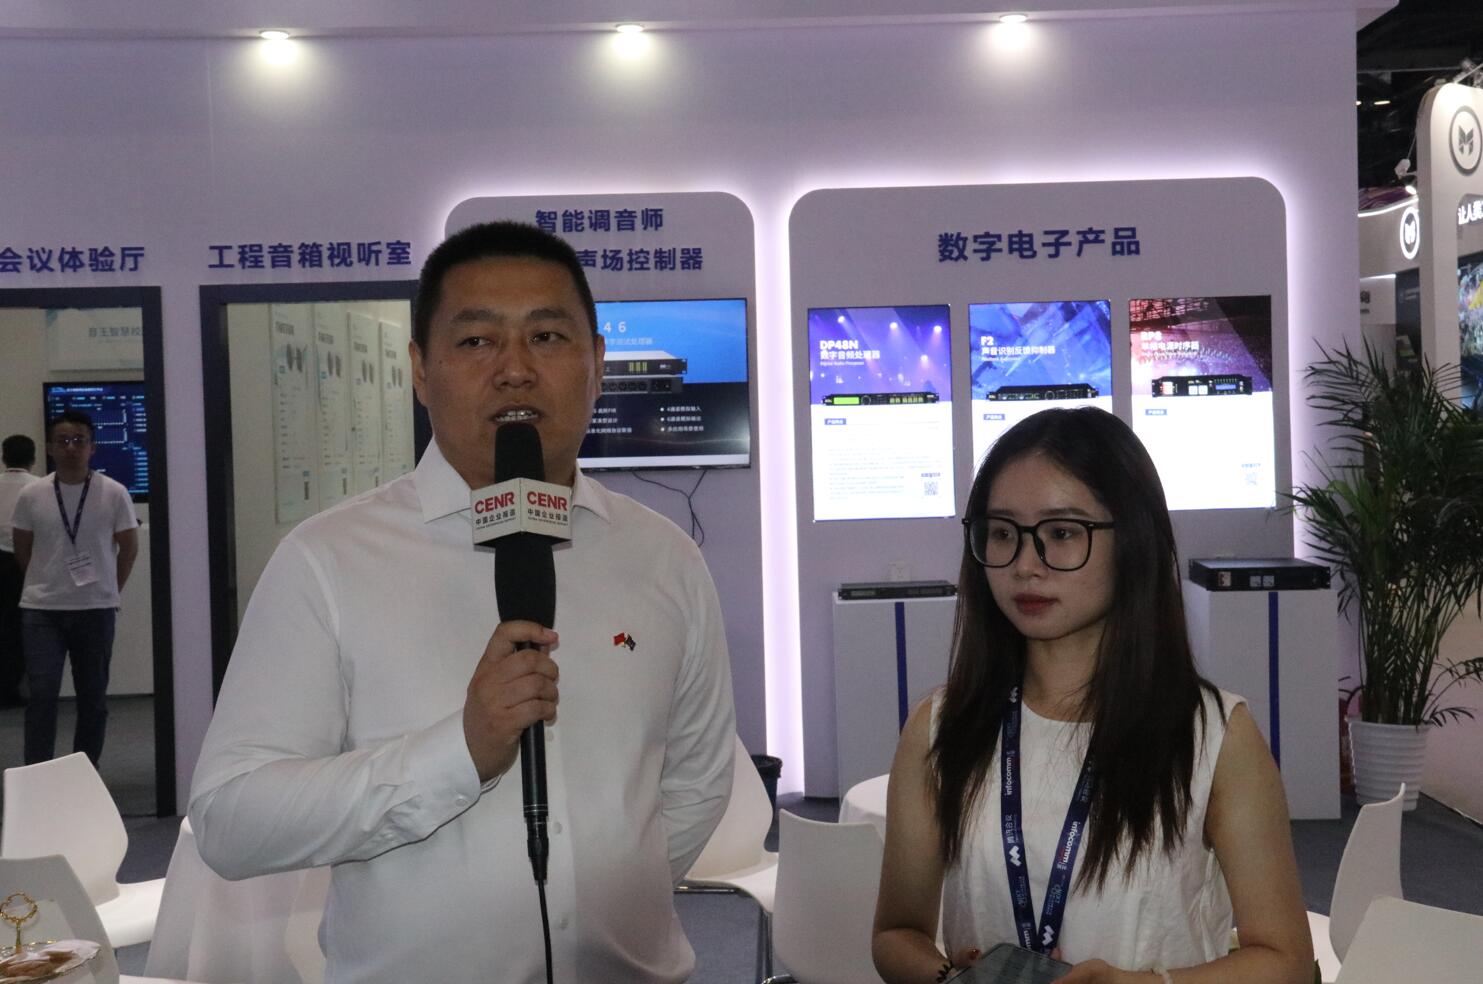 音王亮相北京INFOCOMM CHINA展会 七大展区展示最新前沿技术和创新产品